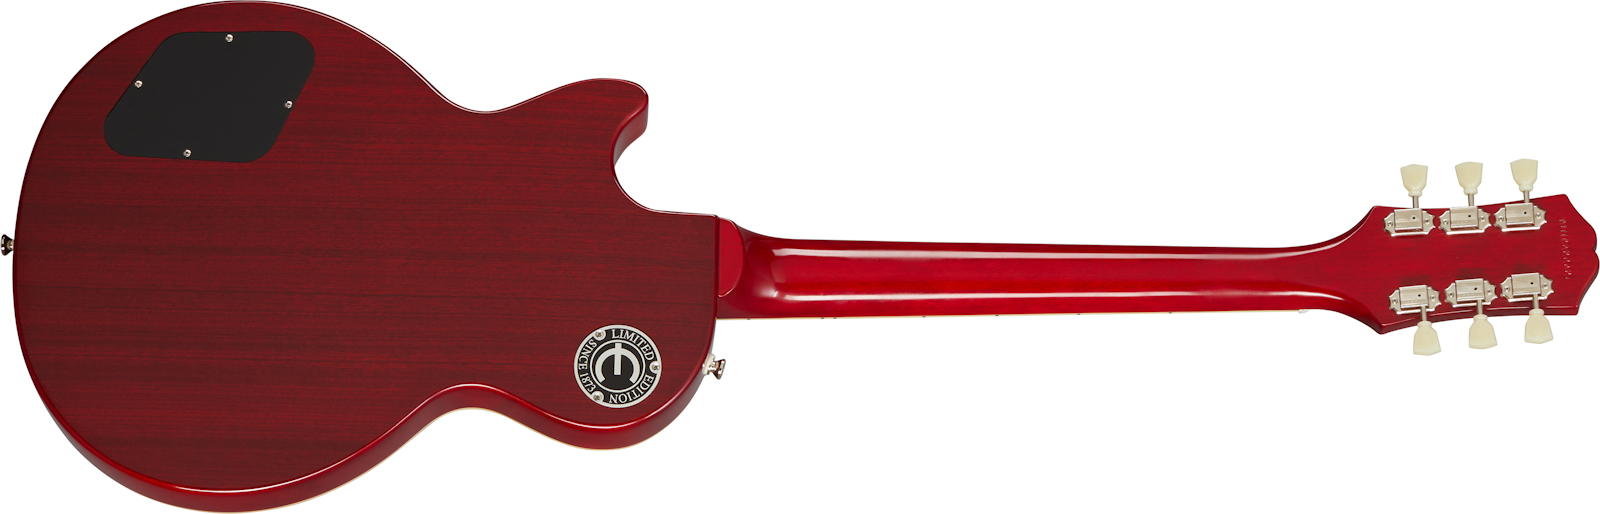 Epiphone Les Paul Standard 1959 Outfit 2h Ht Rw - Aged Dark Cherry Burst - Enkel gesneden elektrische gitaar - Variation 1